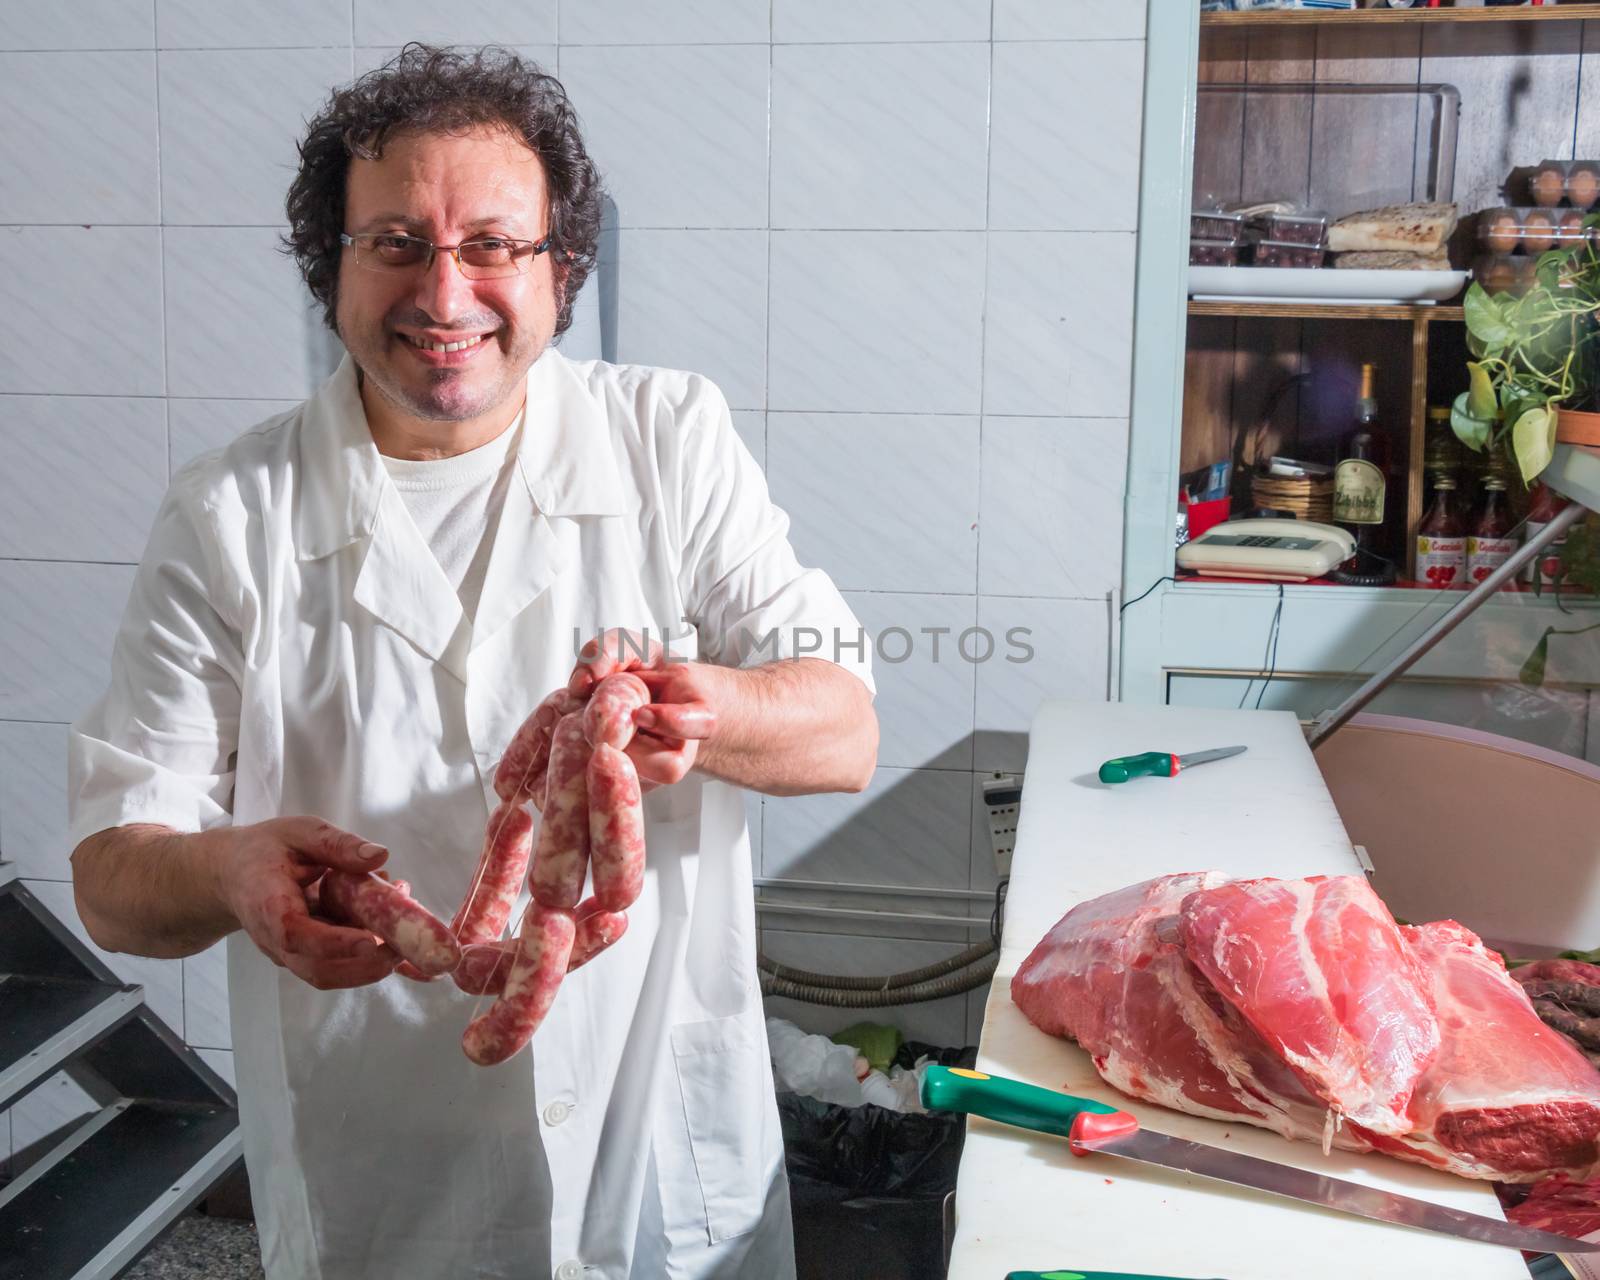 True Sicilian butcher to work in Riposto Catania